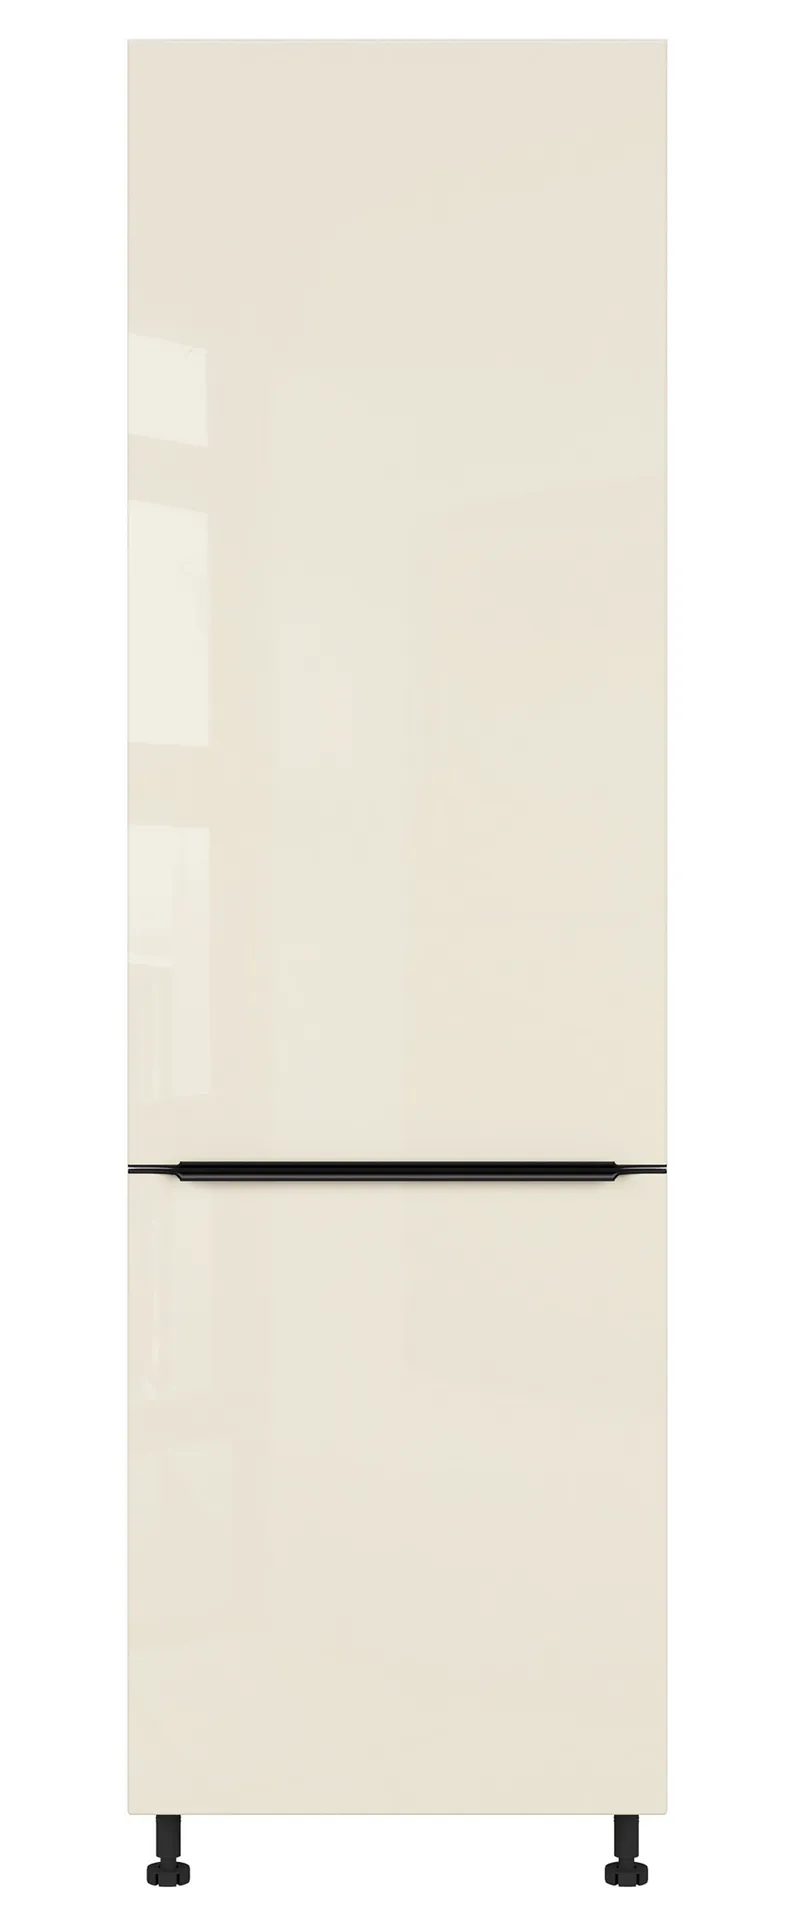 BRW Кухонный шкаф Sole L6 высотой 60 см правый с ящиками магнолия жемчуг, альпийский белый/жемчуг магнолии FM_D4STW_60/207_P/P-BAL/MAPE фото №1